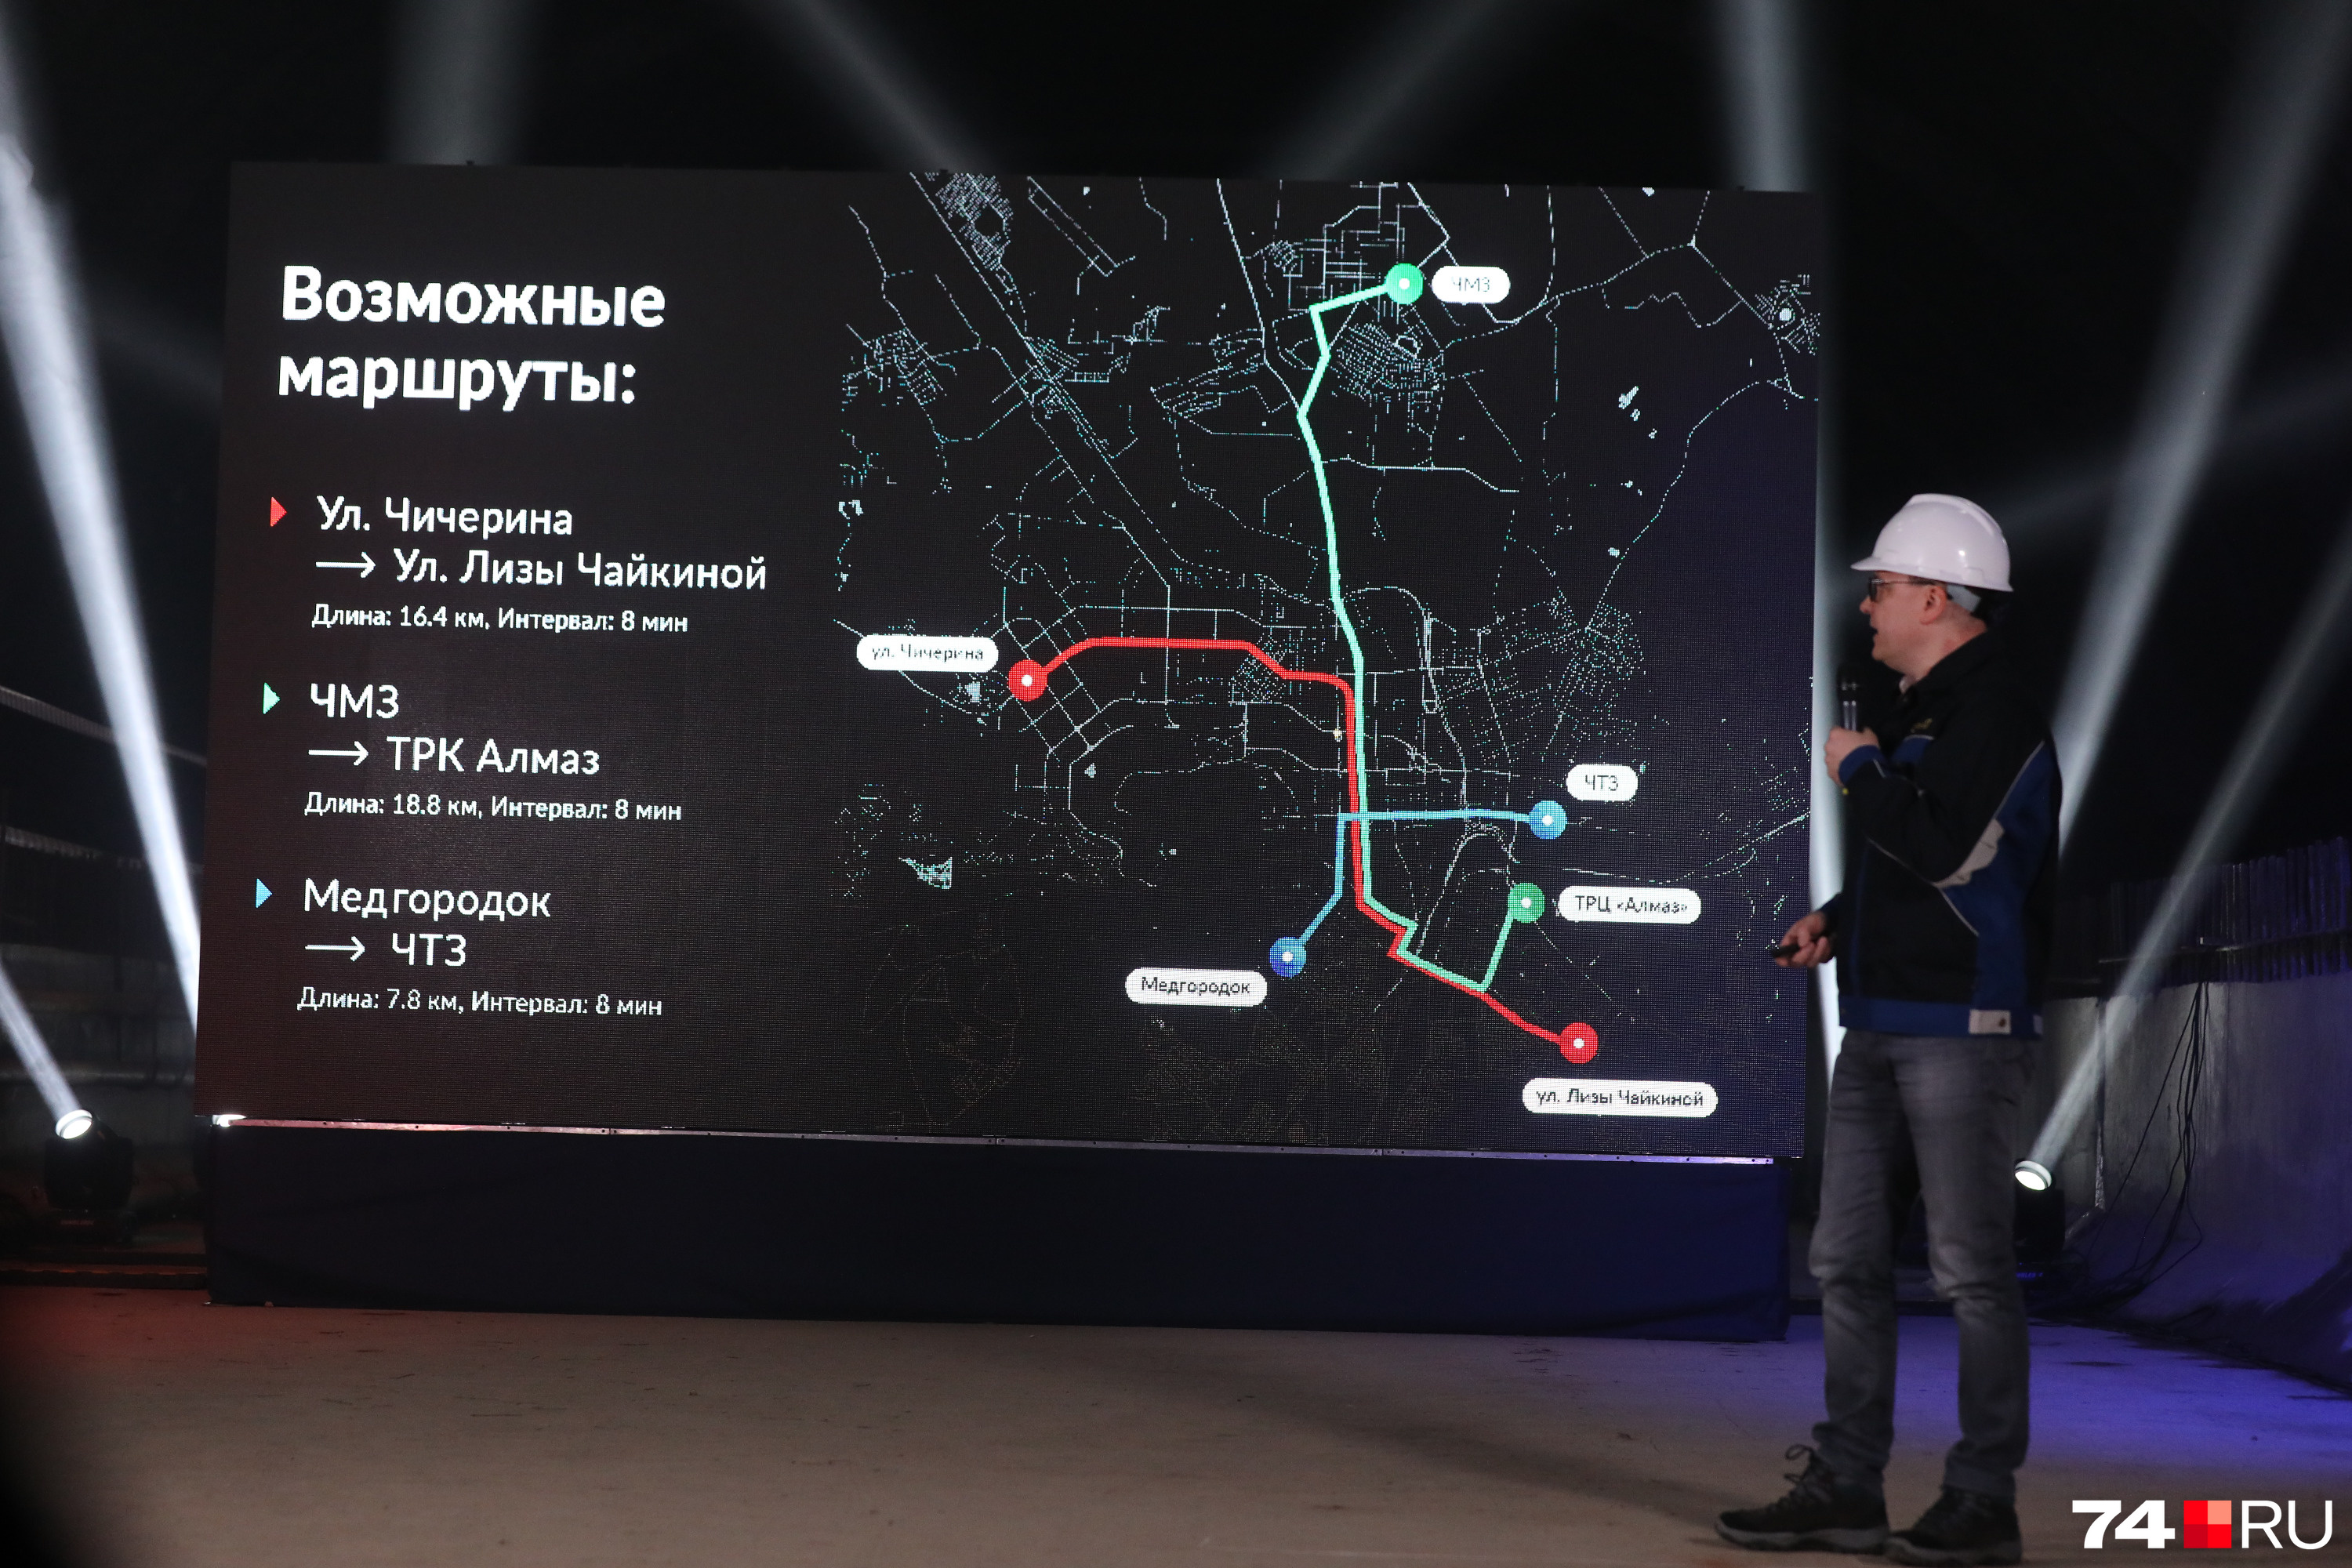 Глава региона рассказал подробно и о подземных линиях, и о наземных маршрутах, которые соединят друг с другом